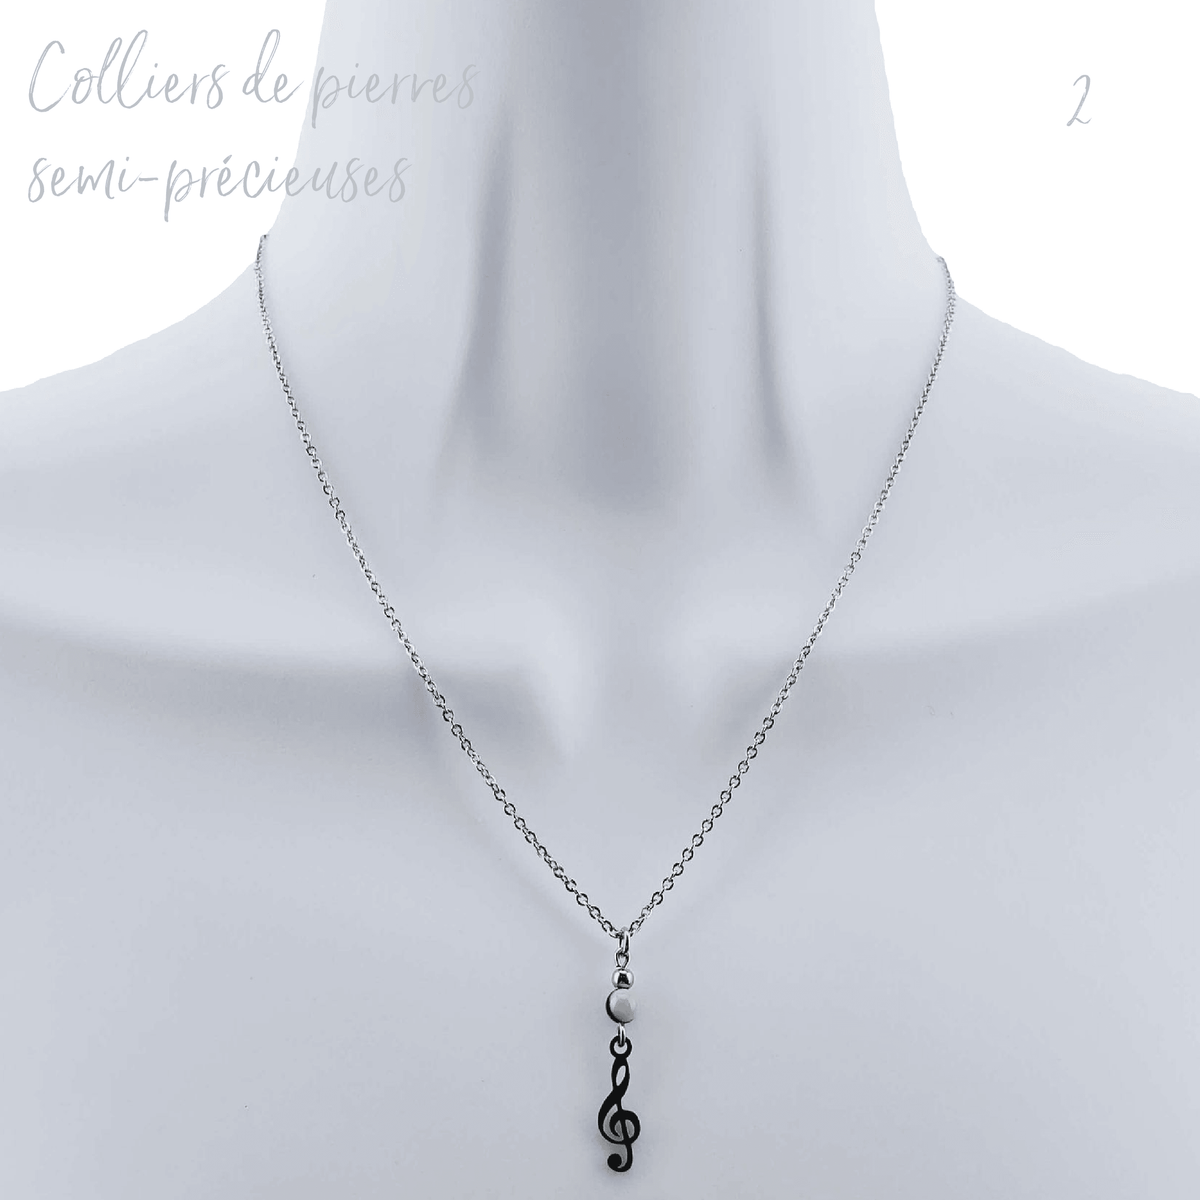 Bijoux Doigts de fée | Collection ''On Sème'' | Colliers de pierres semi-précieuses - Bijoux Doigts de fée